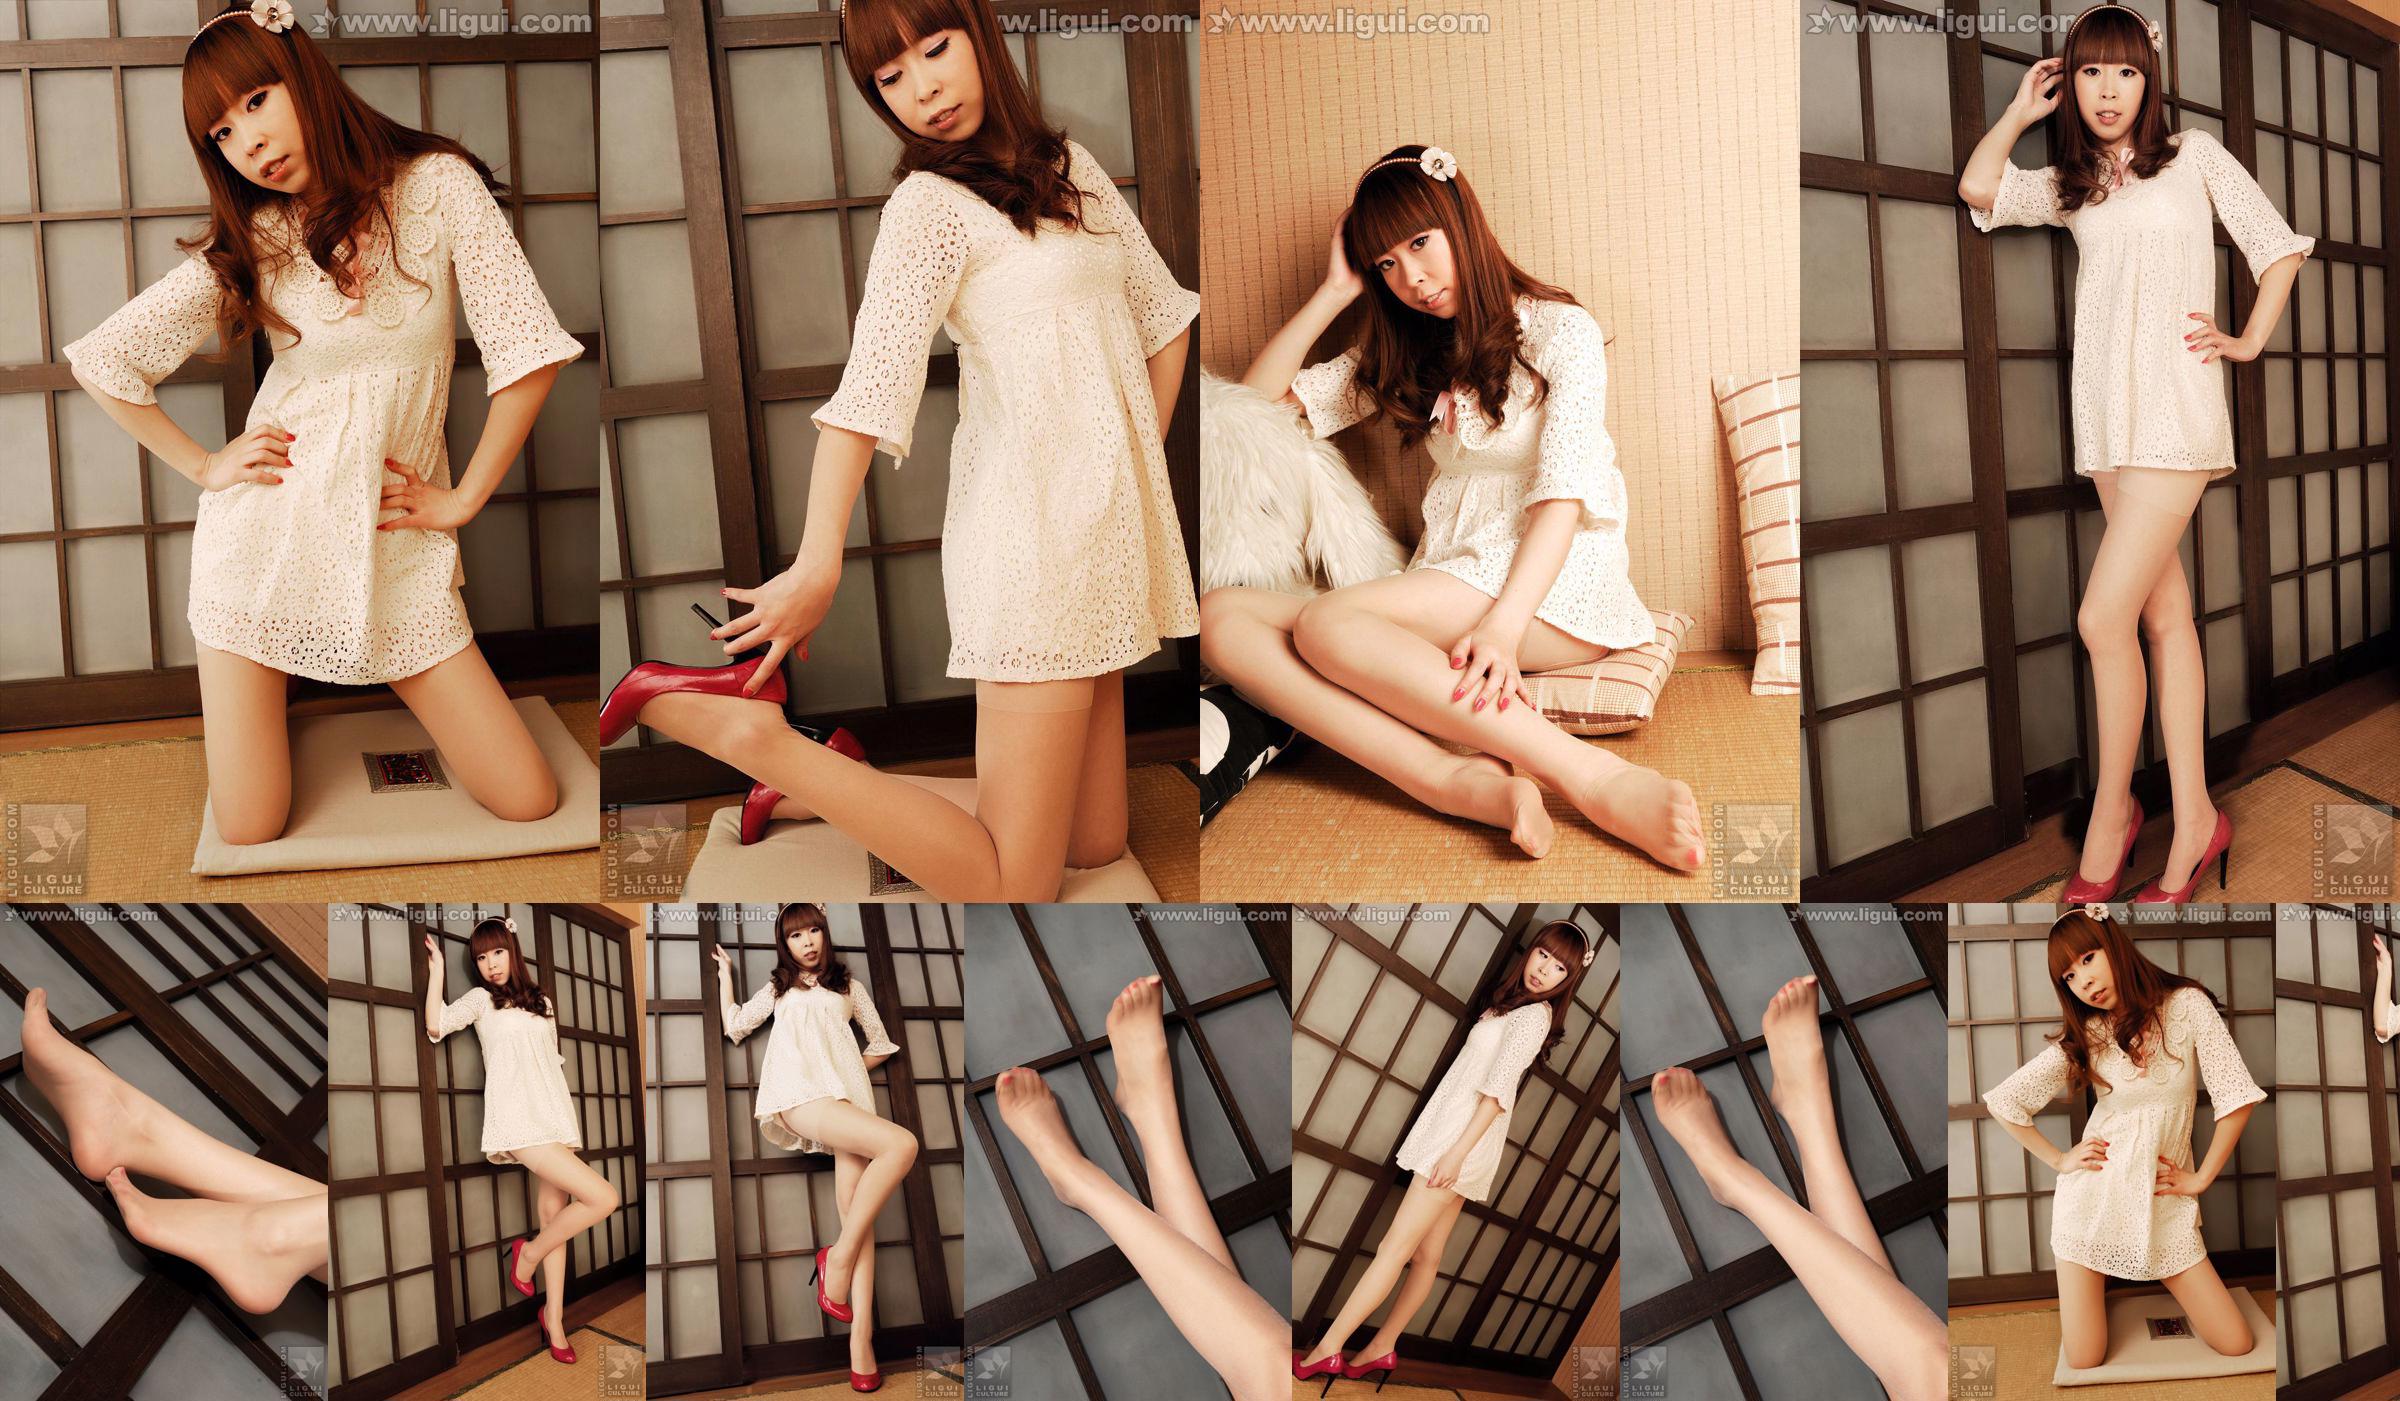 นางแบบ Vikcy "The Temptation of Japanese Style" [丽柜 LiGui] รูปถ่ายขาสวยและเท้าหยก No.a37773 หน้า 1